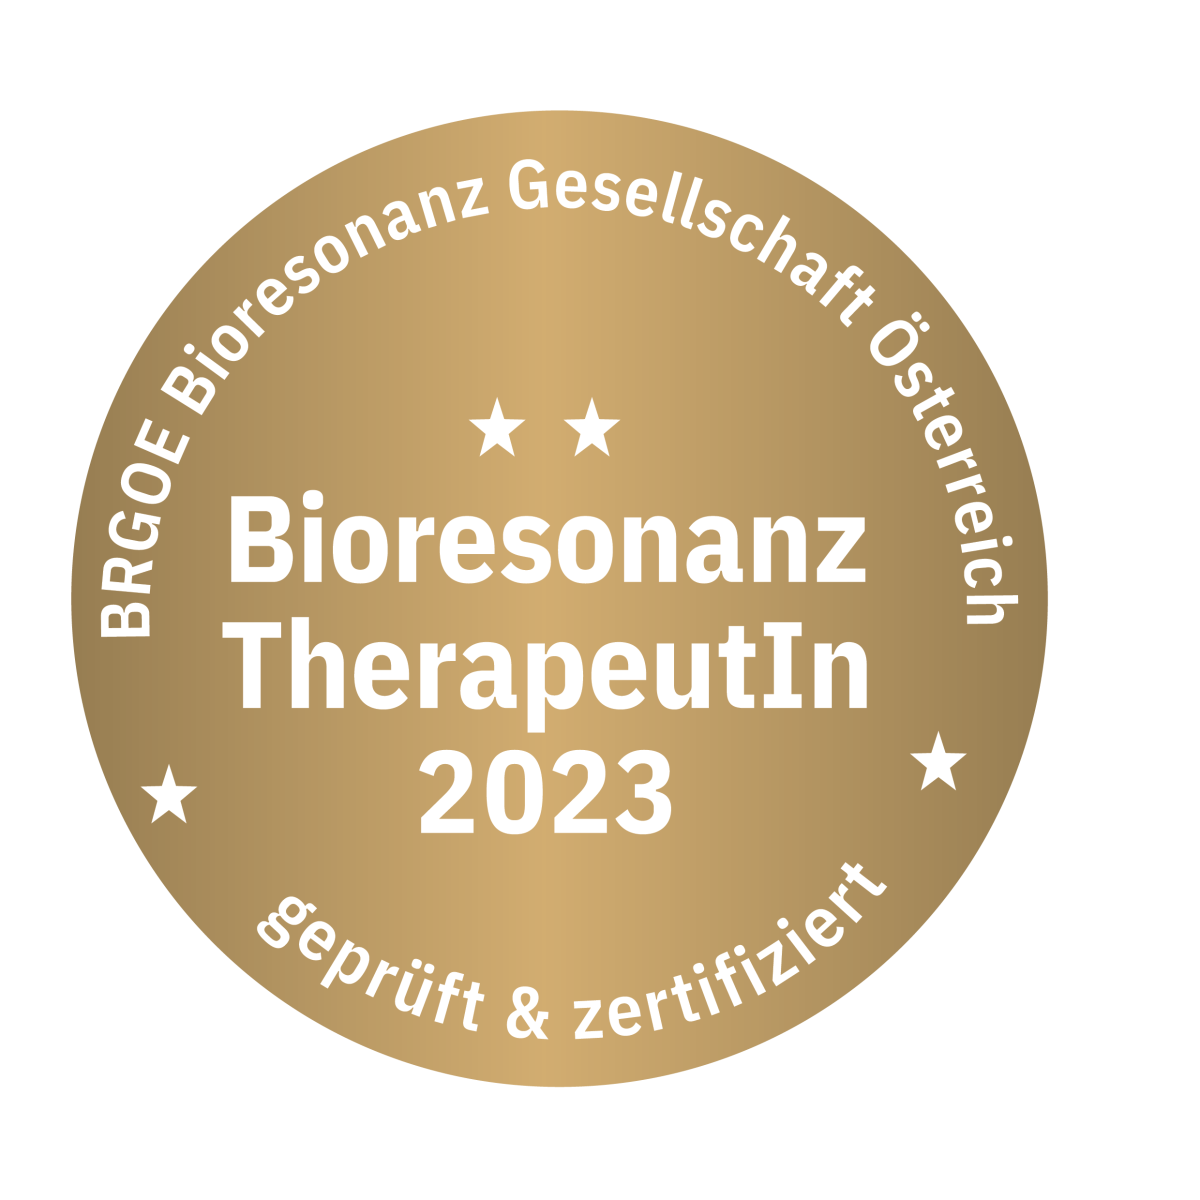 Bioresonanz-Therapeutin 2023 